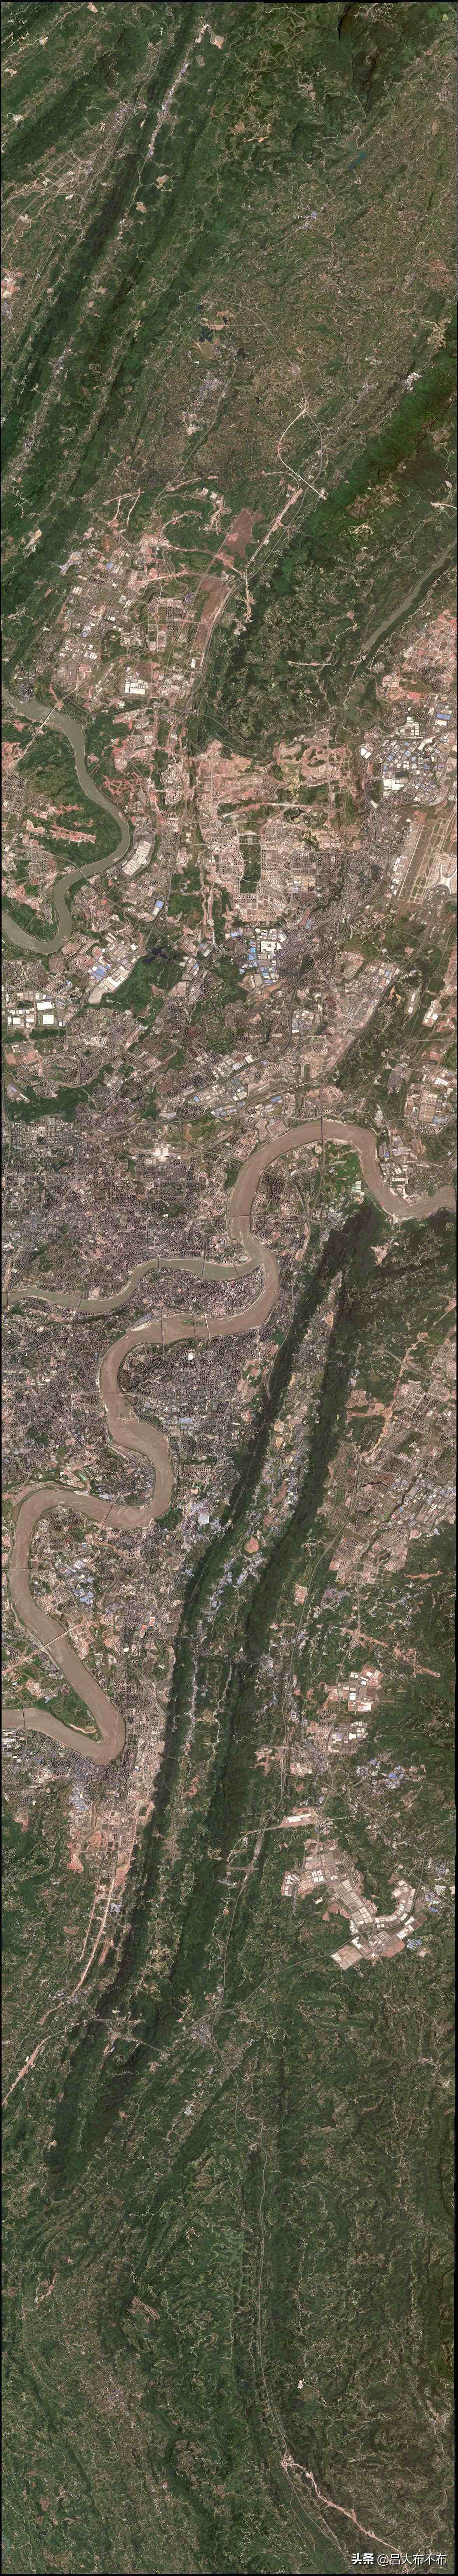 高清农村卫星地图 2020图片